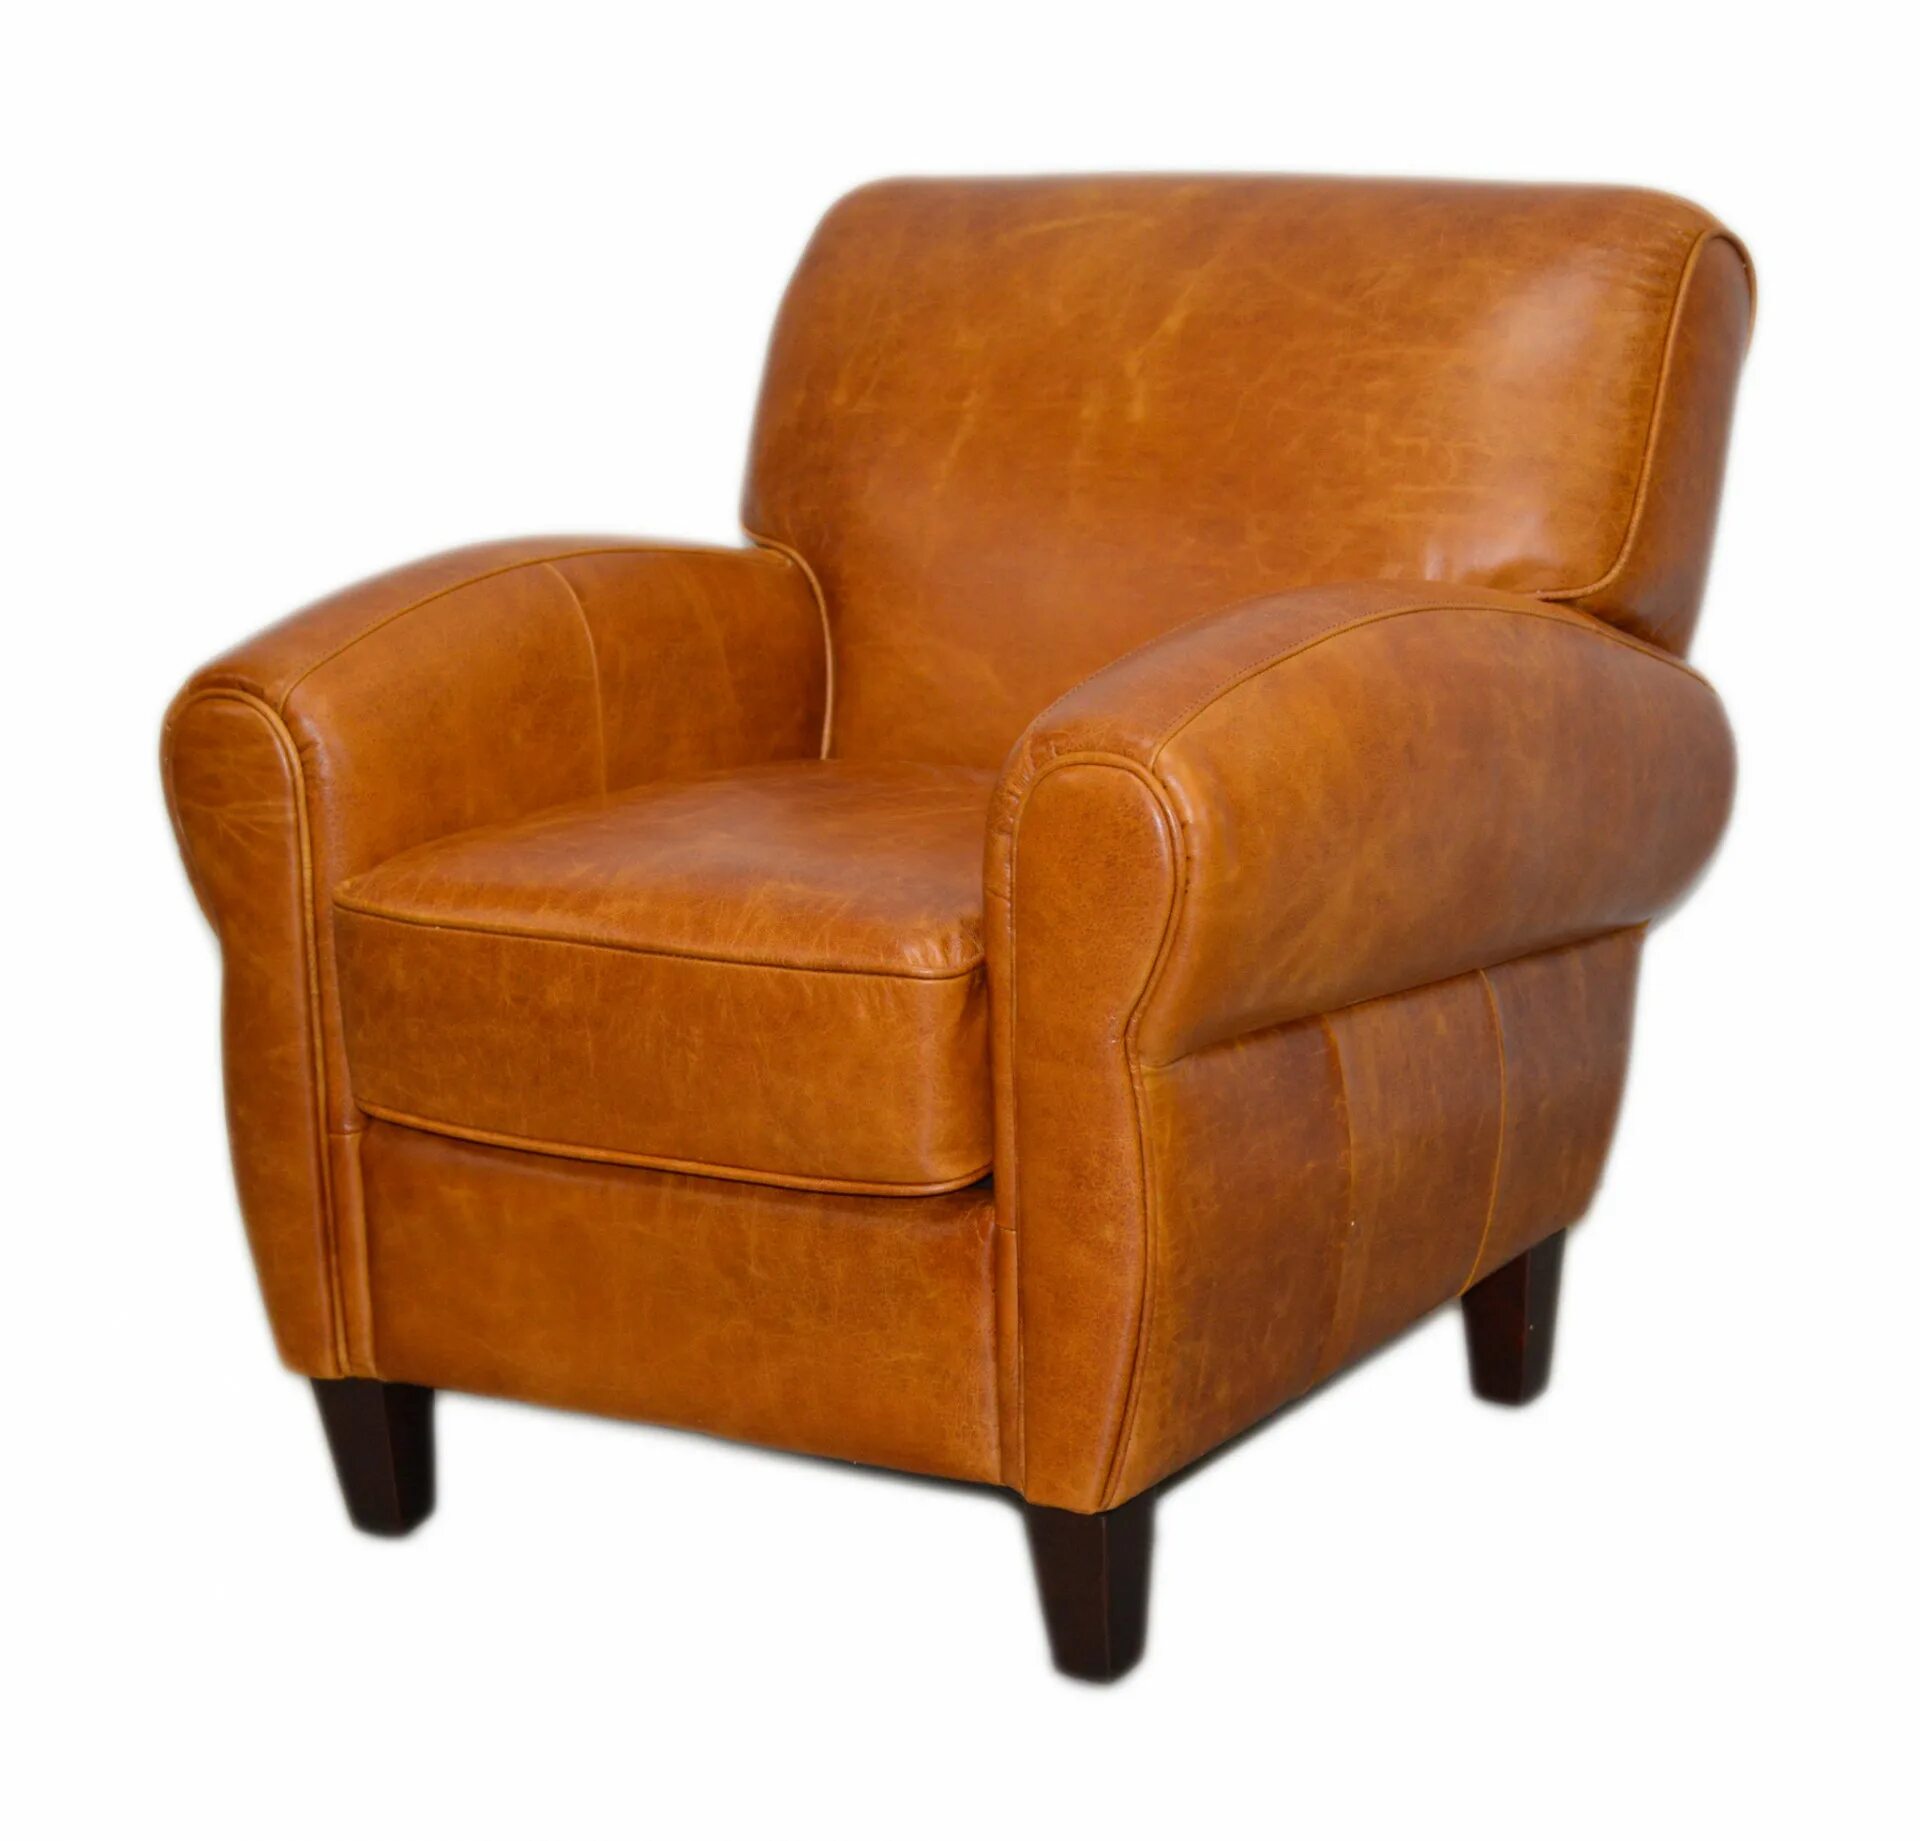 Ое кресло. Кресло рыжая кожа. Кресло кожаное раскладное. Рыжие кожаные кресла. Мягкое кожаное кресло.